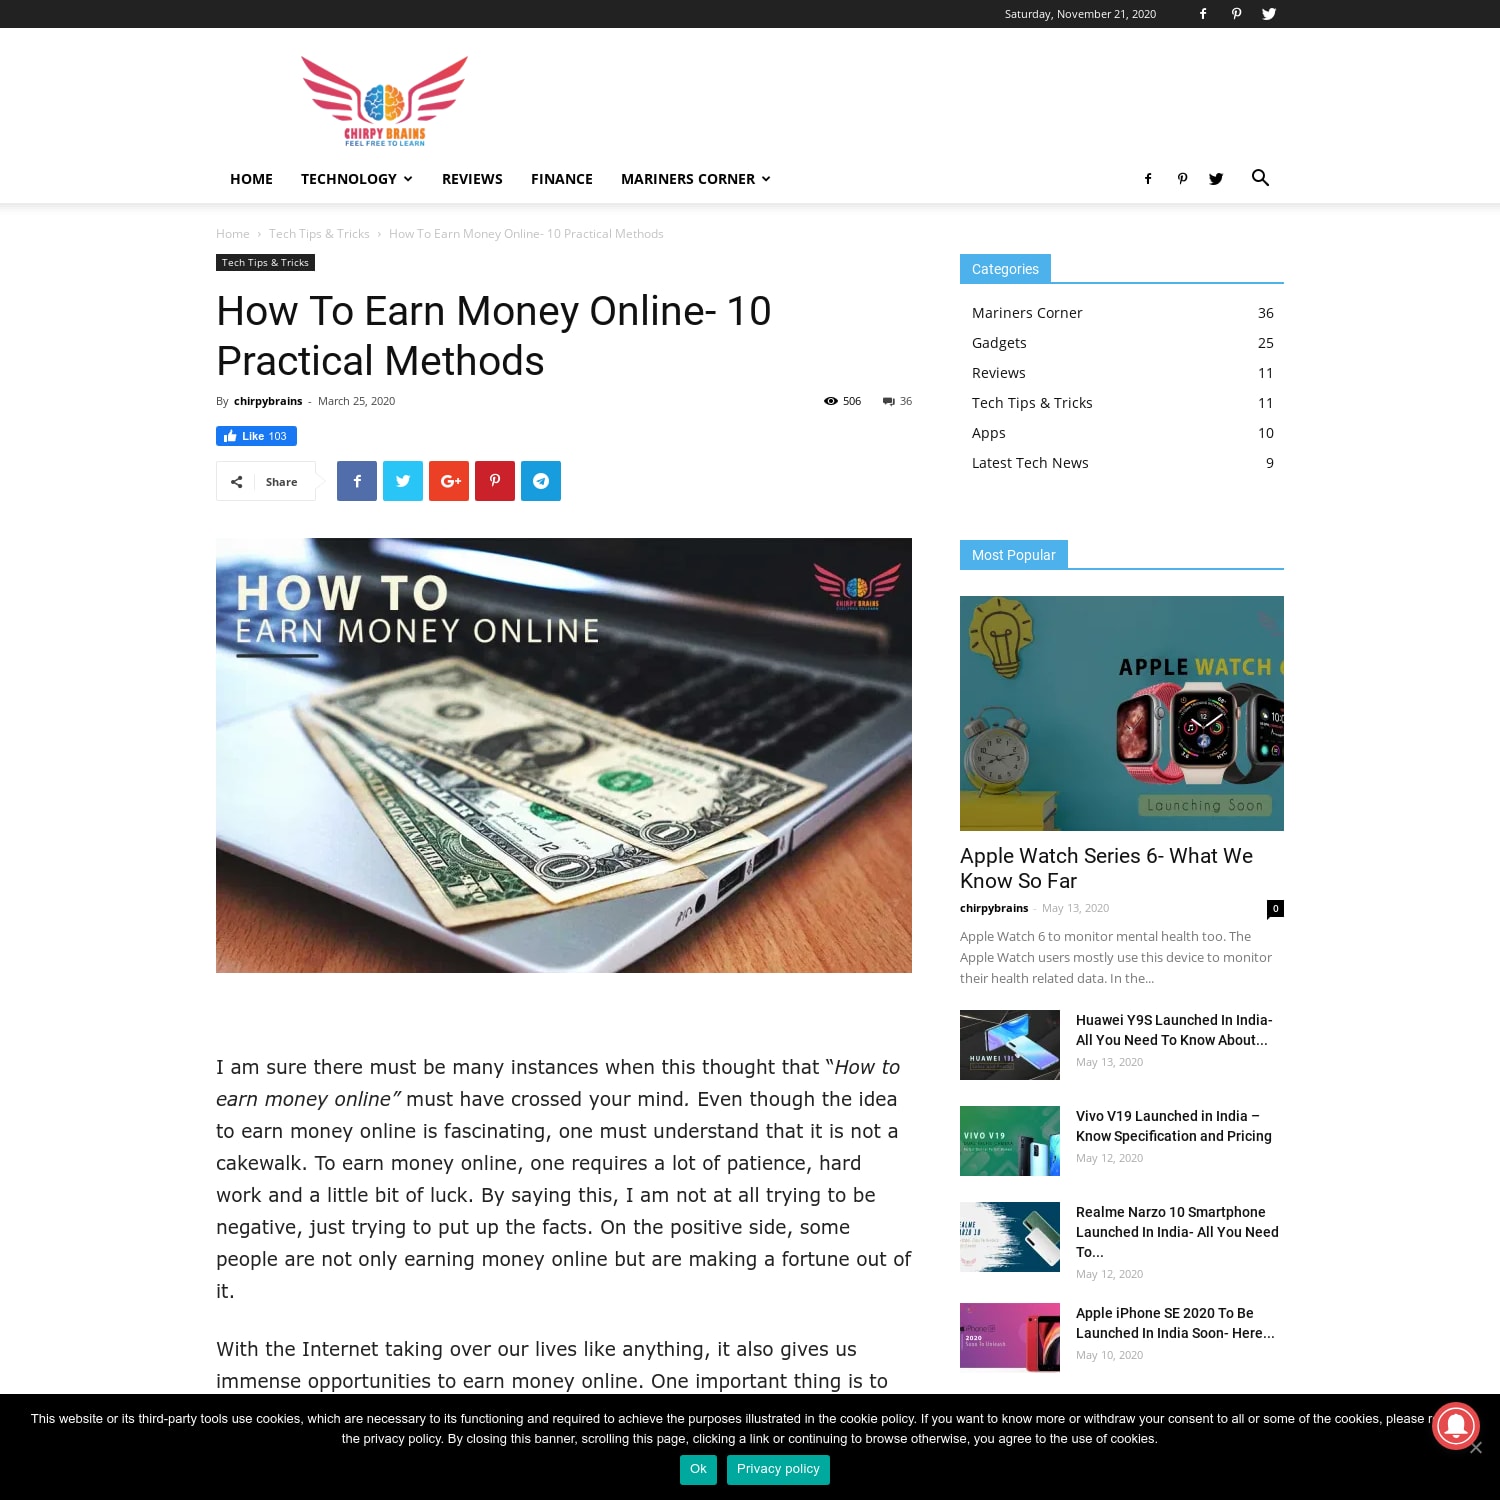 How To Earn Money Online- 10 Practical Methods